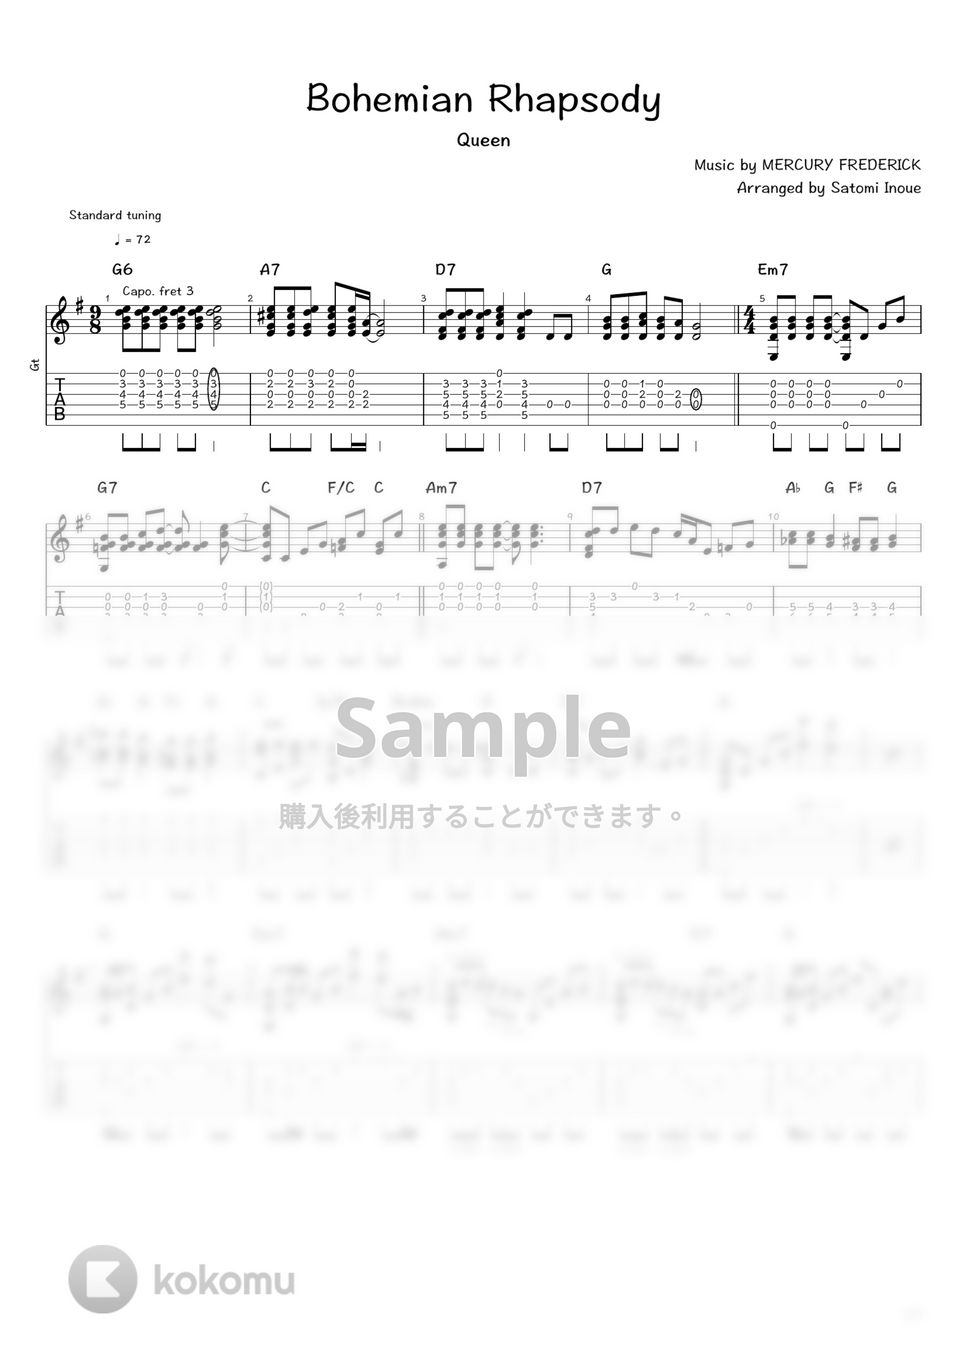 Queen - Bohemian Rhapsody (ソロギター / タブ譜) by 井上さとみ